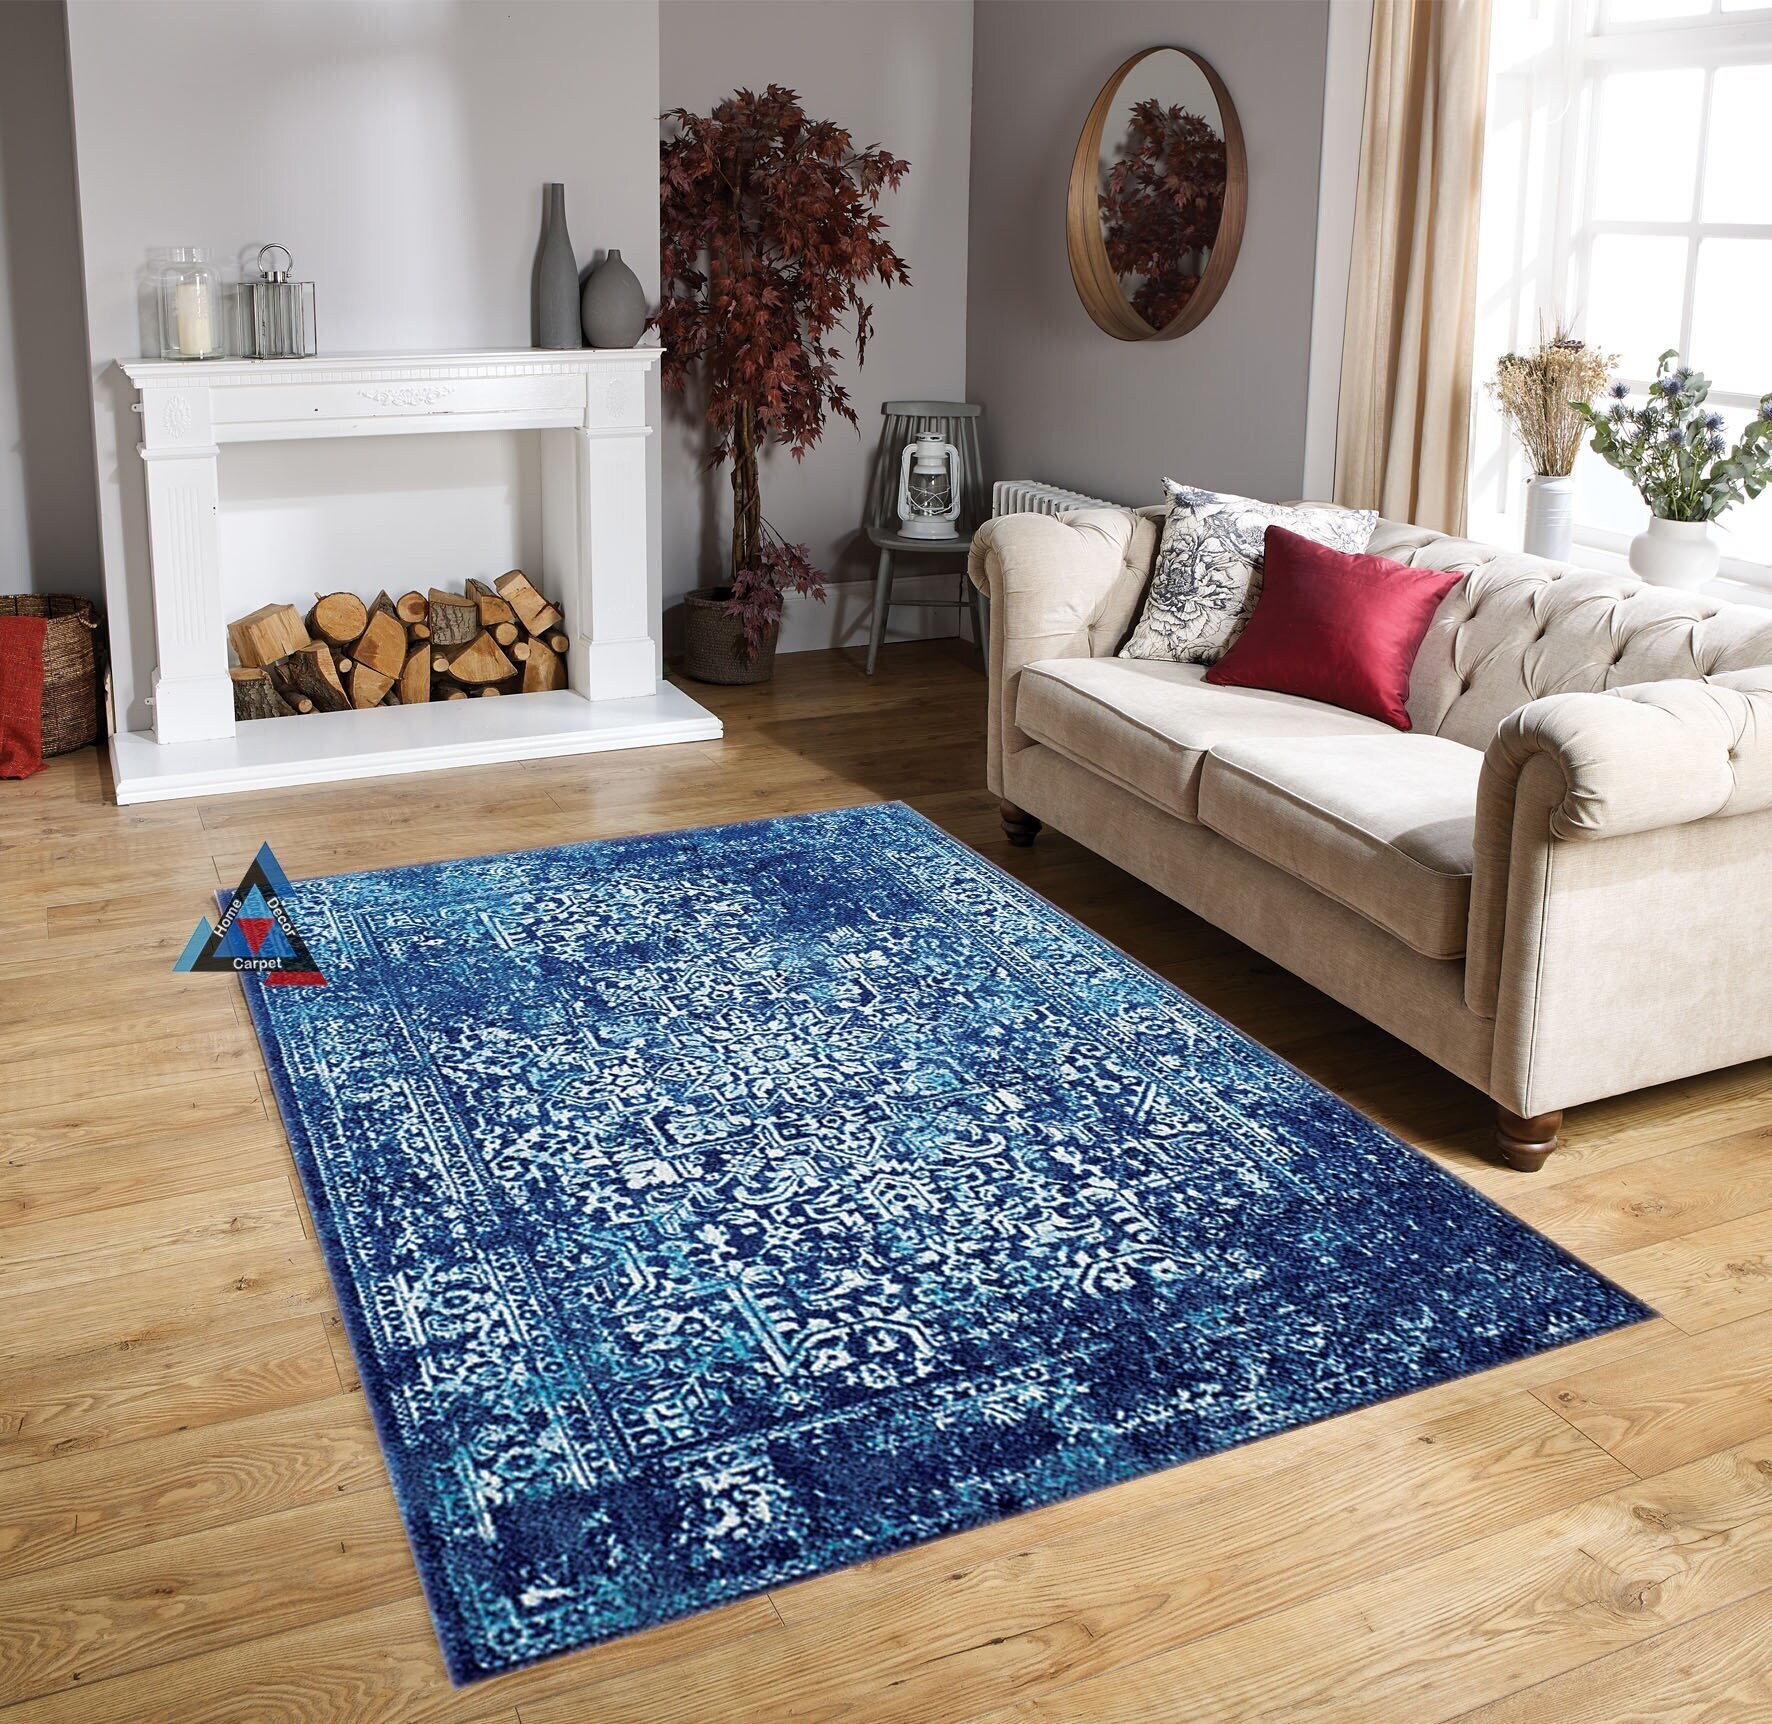  RUGMRZ Teppiche In Wohnzimmer Teppiche, Dämm- & Schutzmatten  Retro-Teppich rote und Blaue Blumendekoration kann angepasst Werden 200 x  300 cm